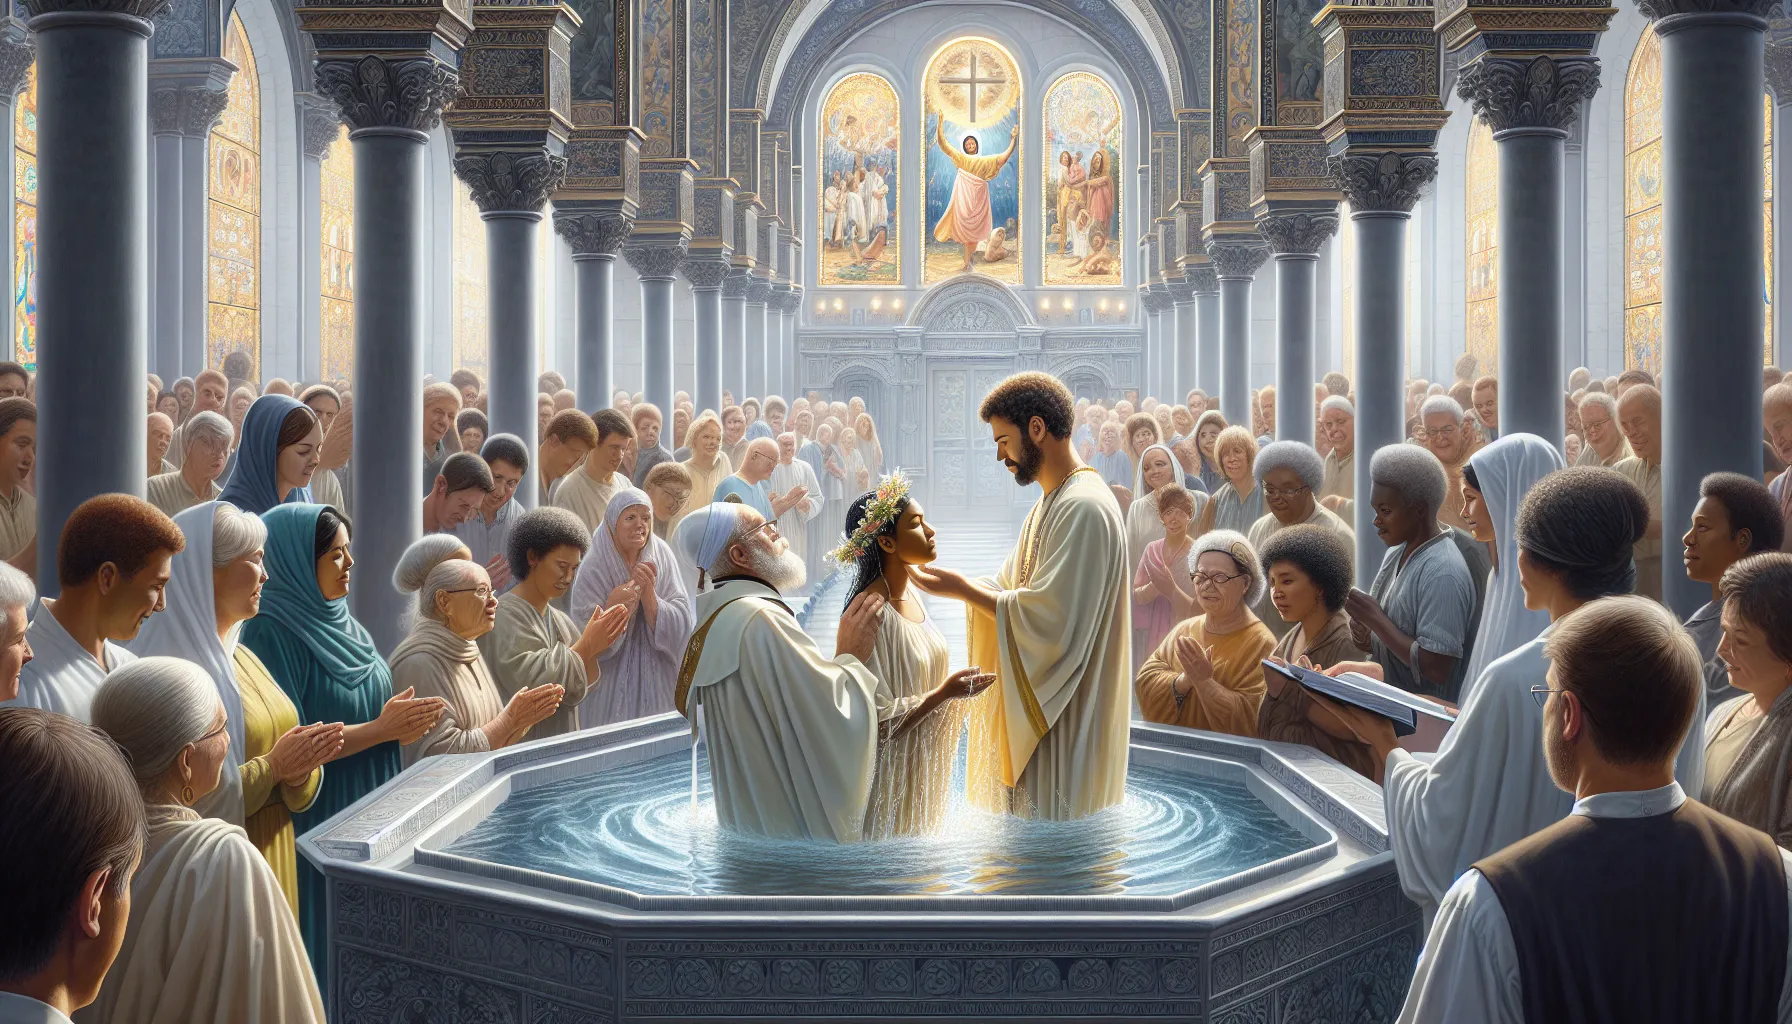 Imagen de una persona siendo bautizada en una iglesia como símbolo de su fe y compromiso religioso.